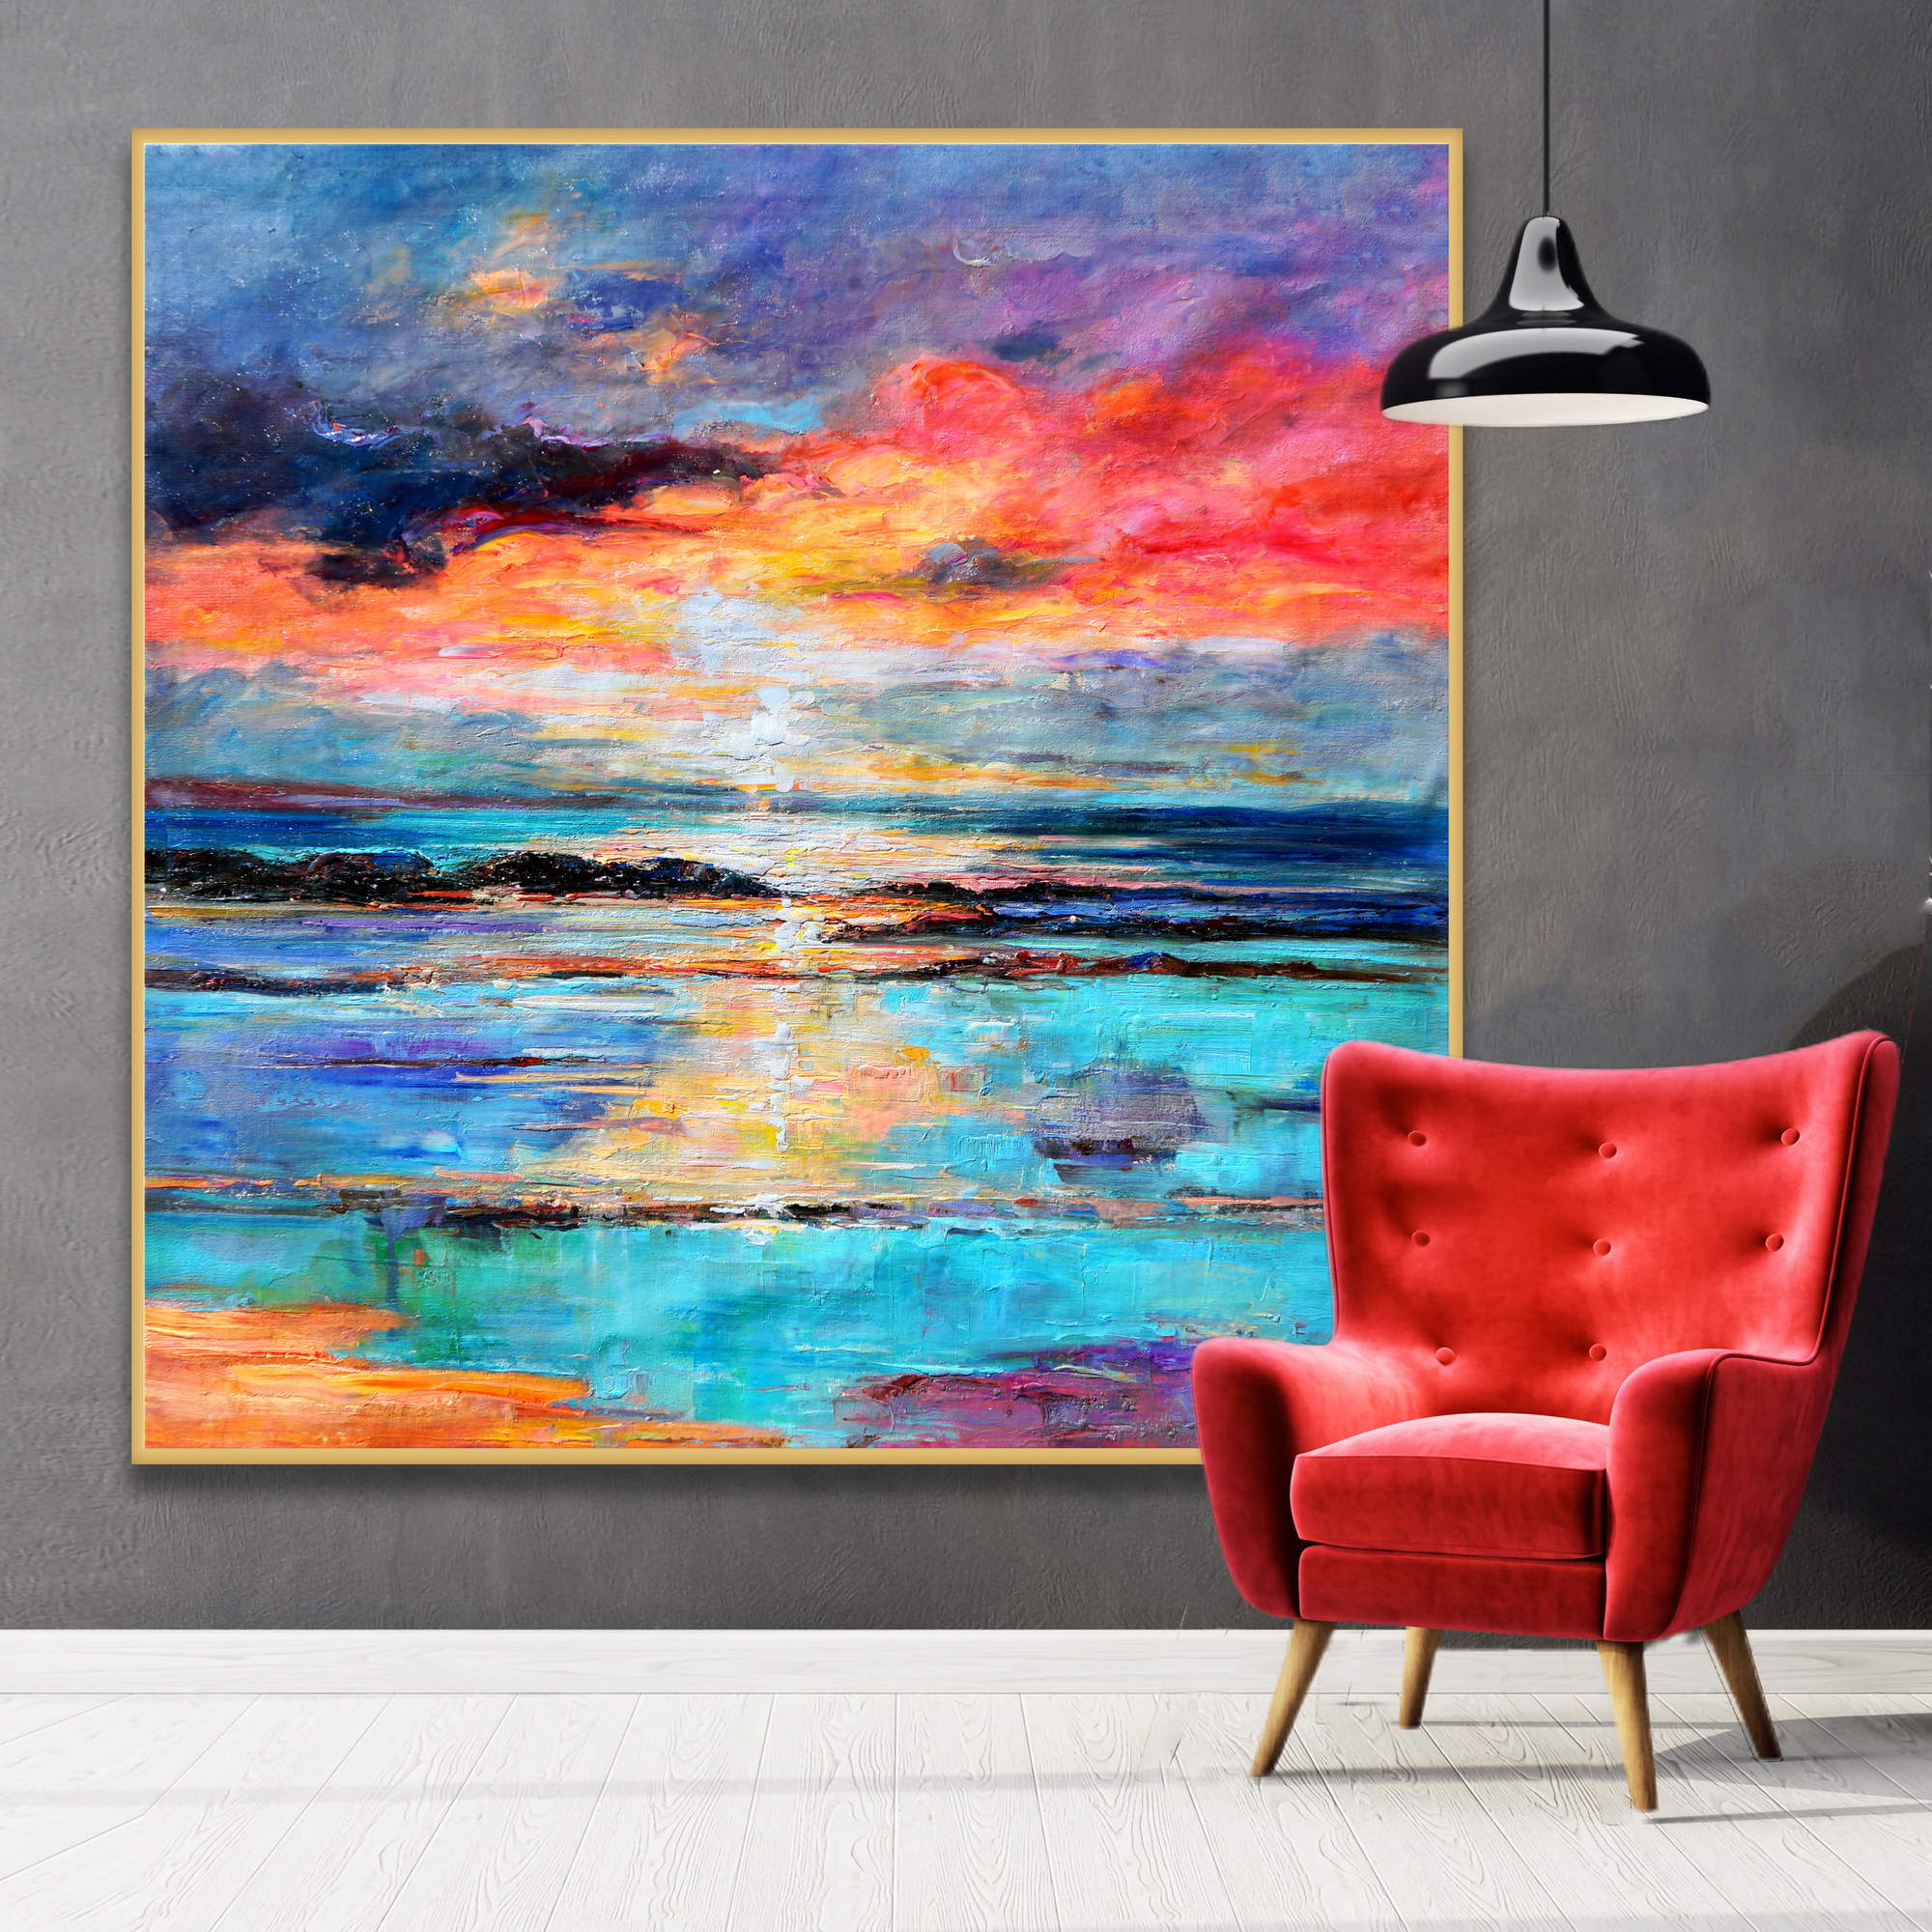 Dipinto astratto di paesaggio marino con tramonto infuocato